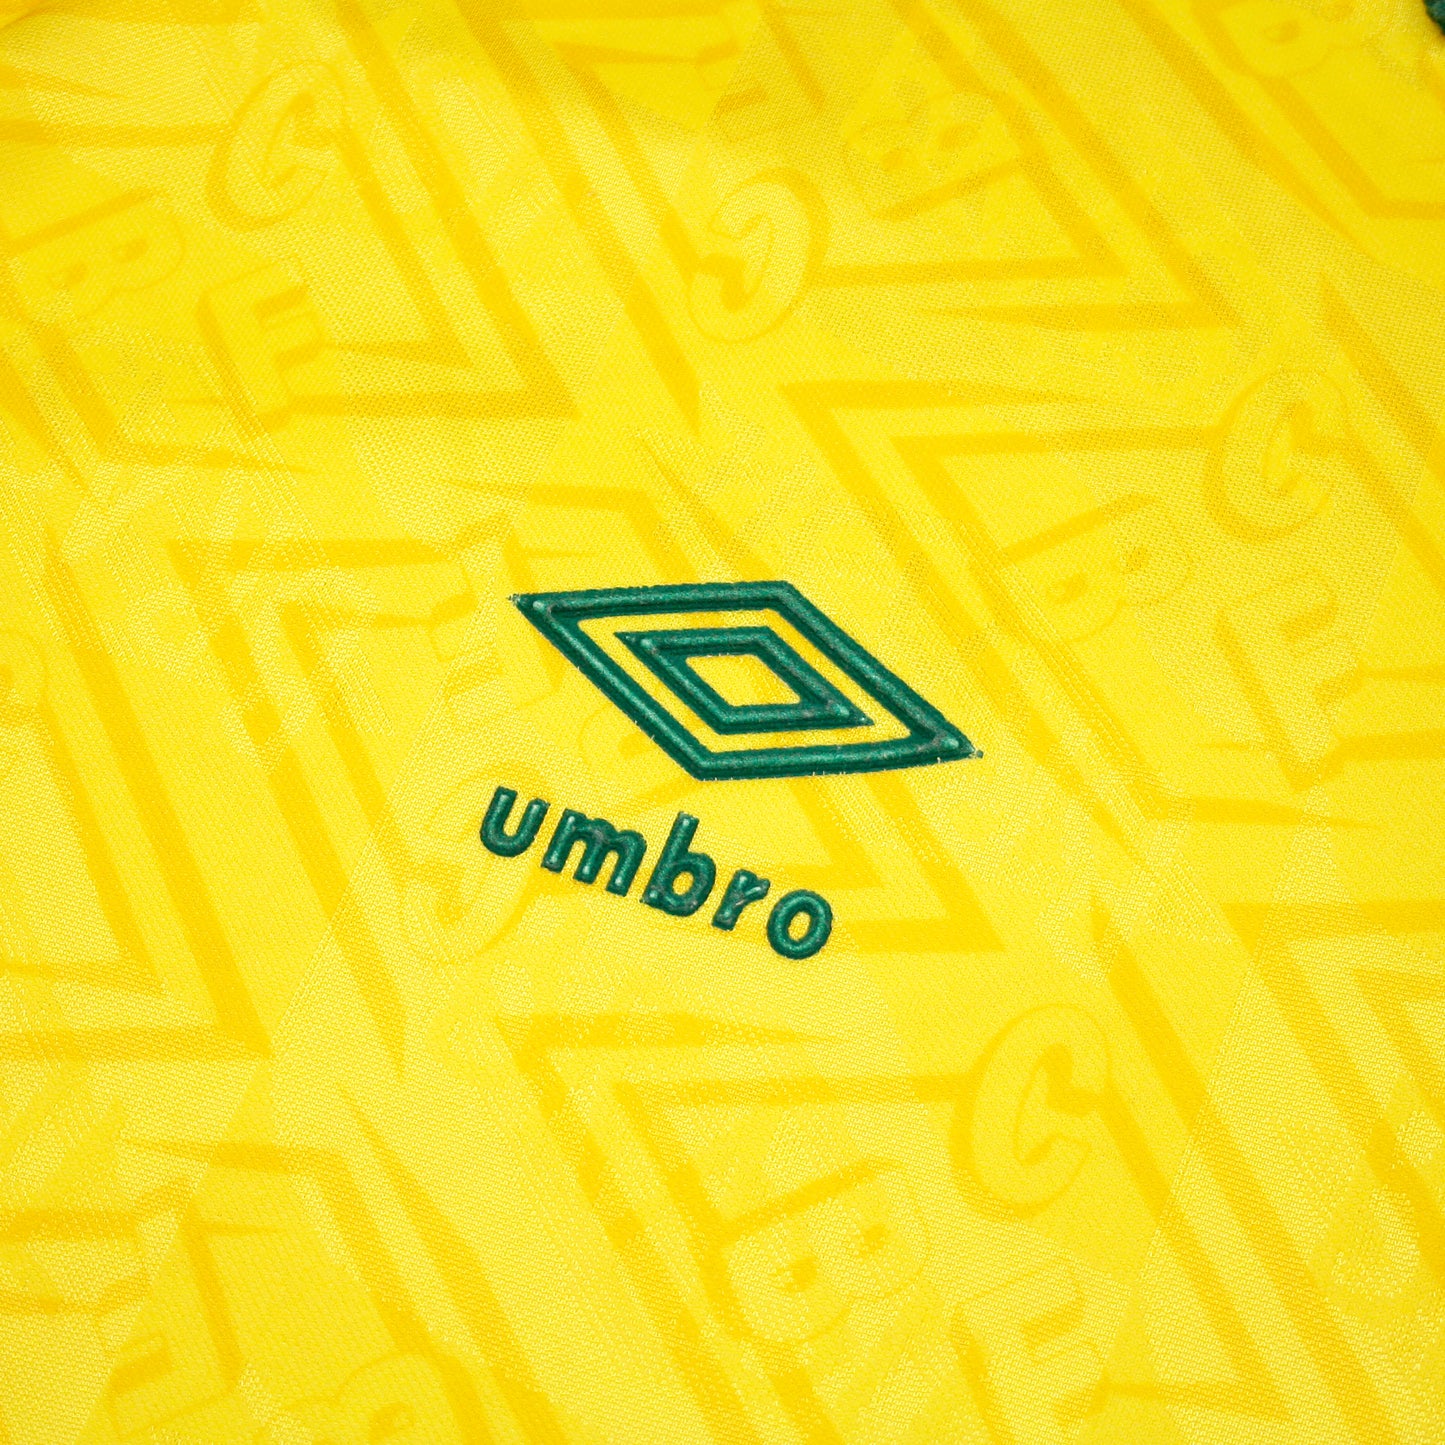 Brasil 91/93 • Camiseta Local • XL